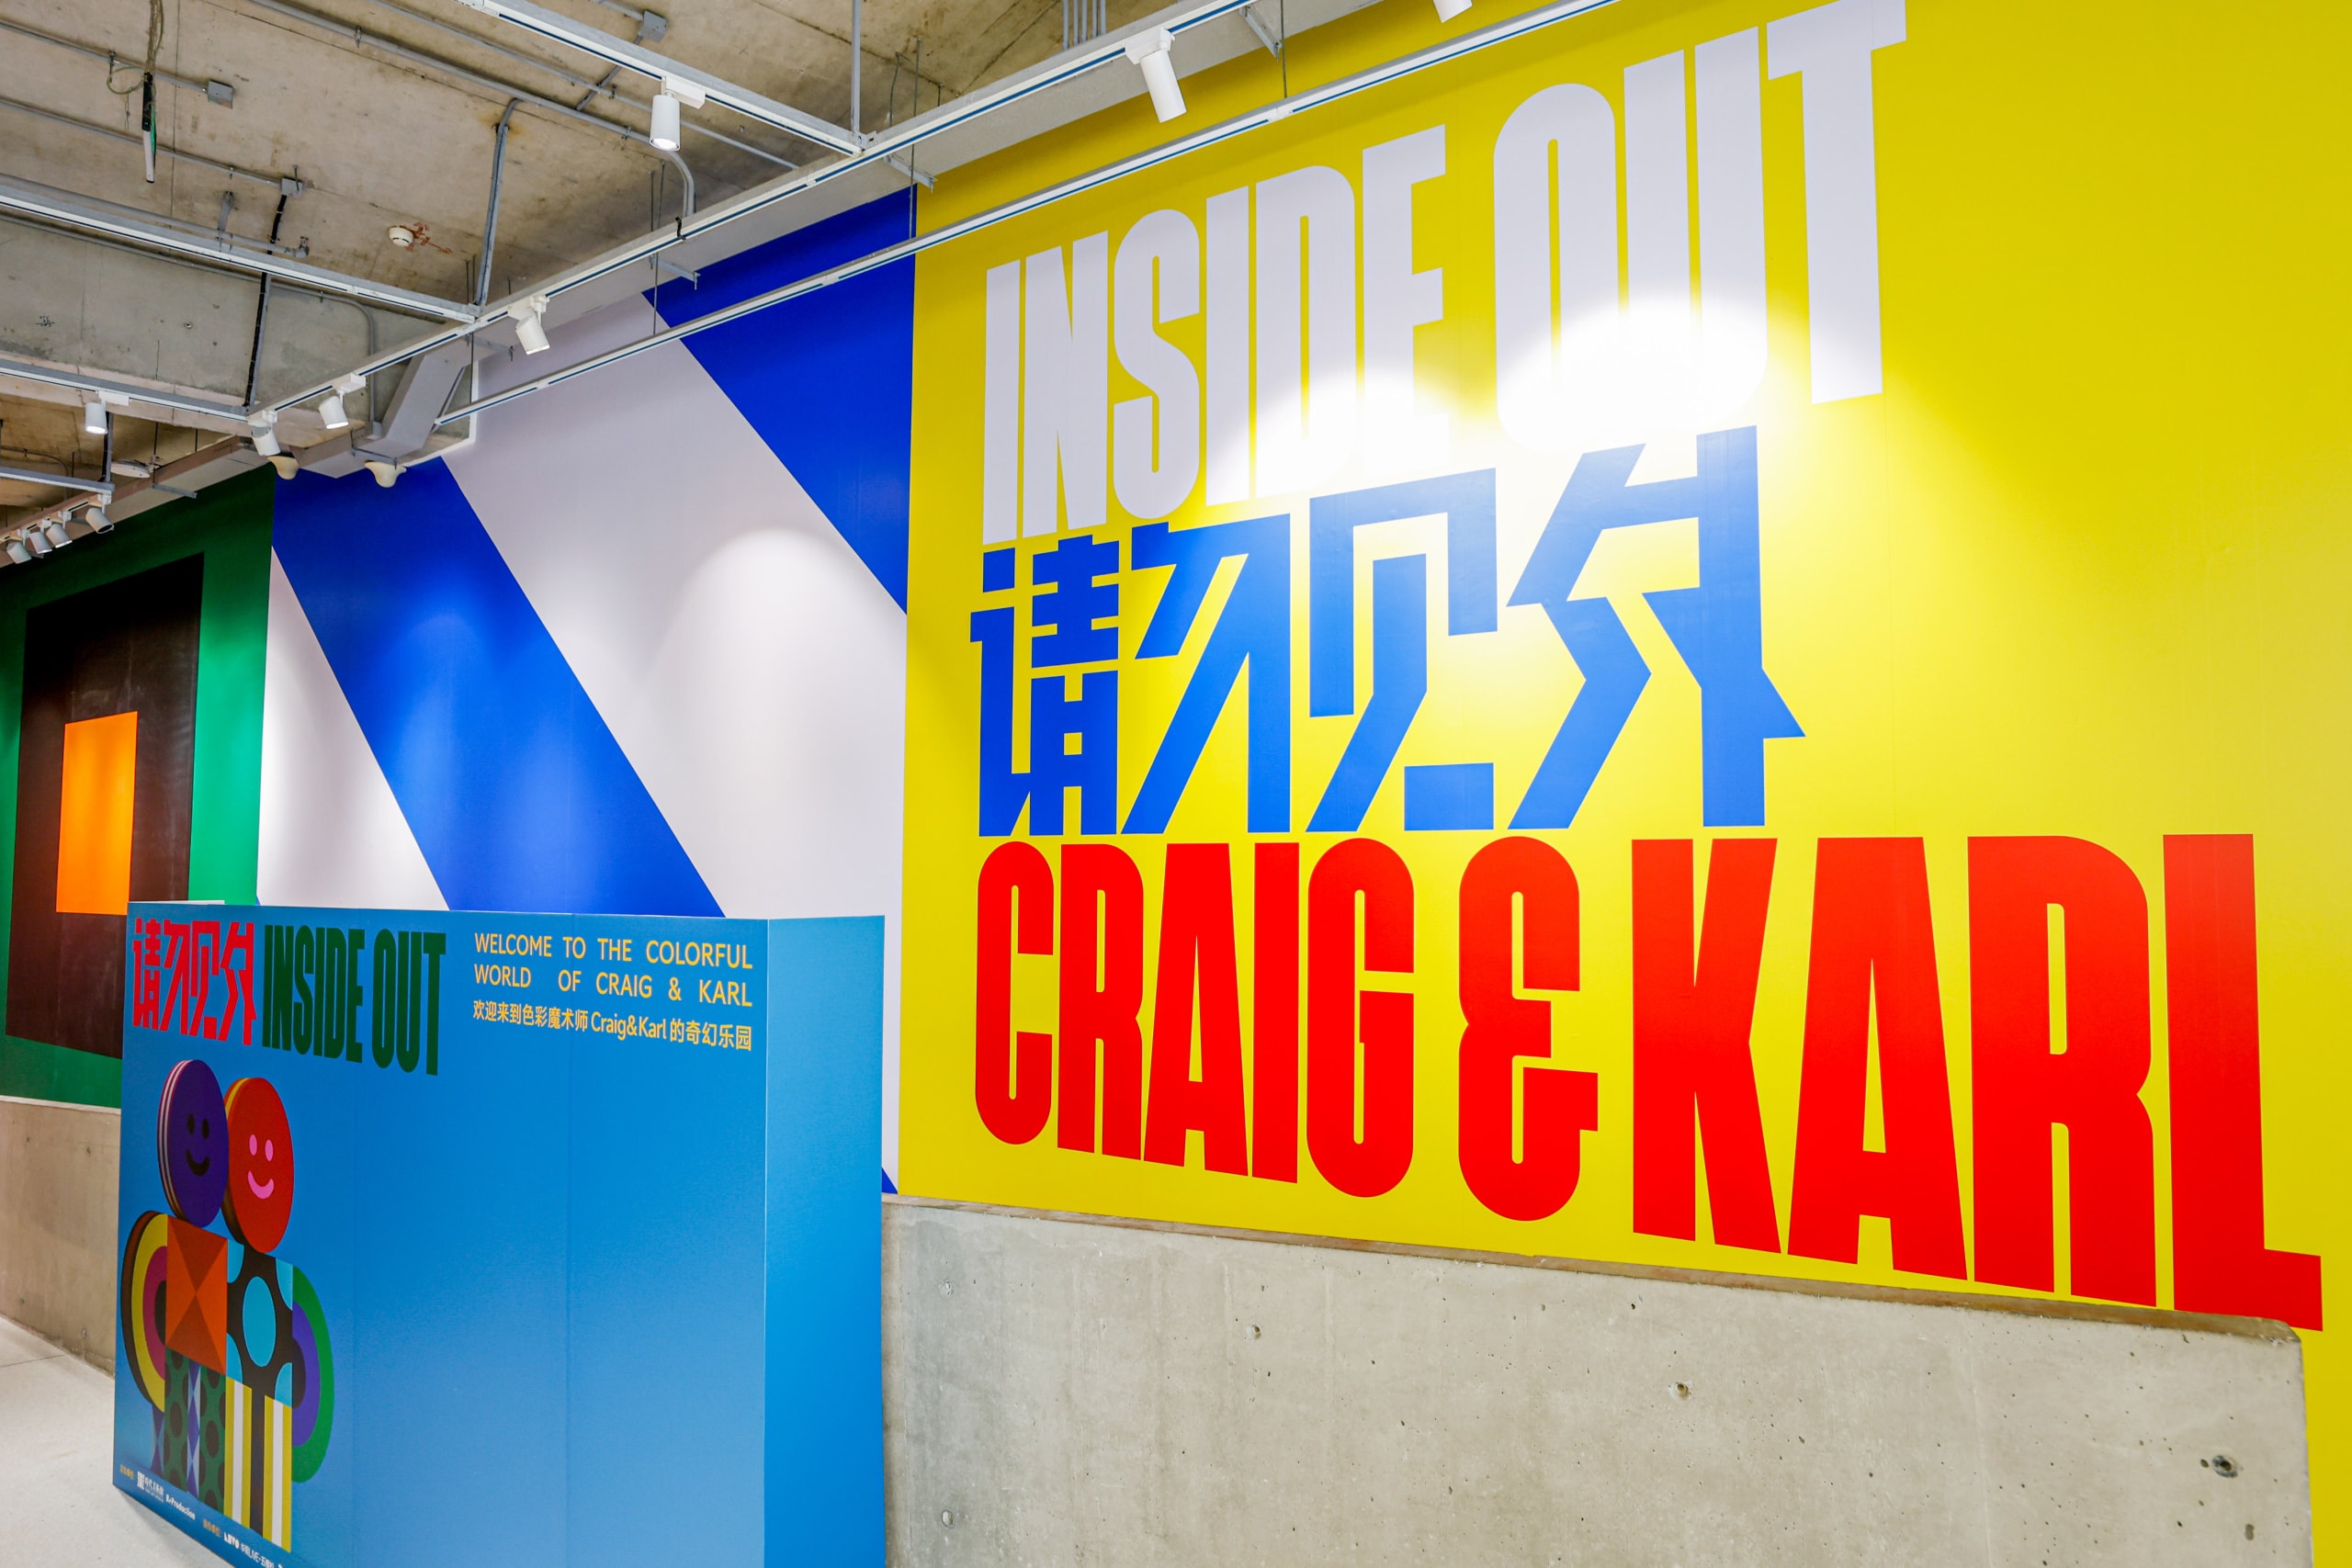 艺术家组合 Craig & Karl 于北京开设个展《INSIDE OUT 请勿见外》